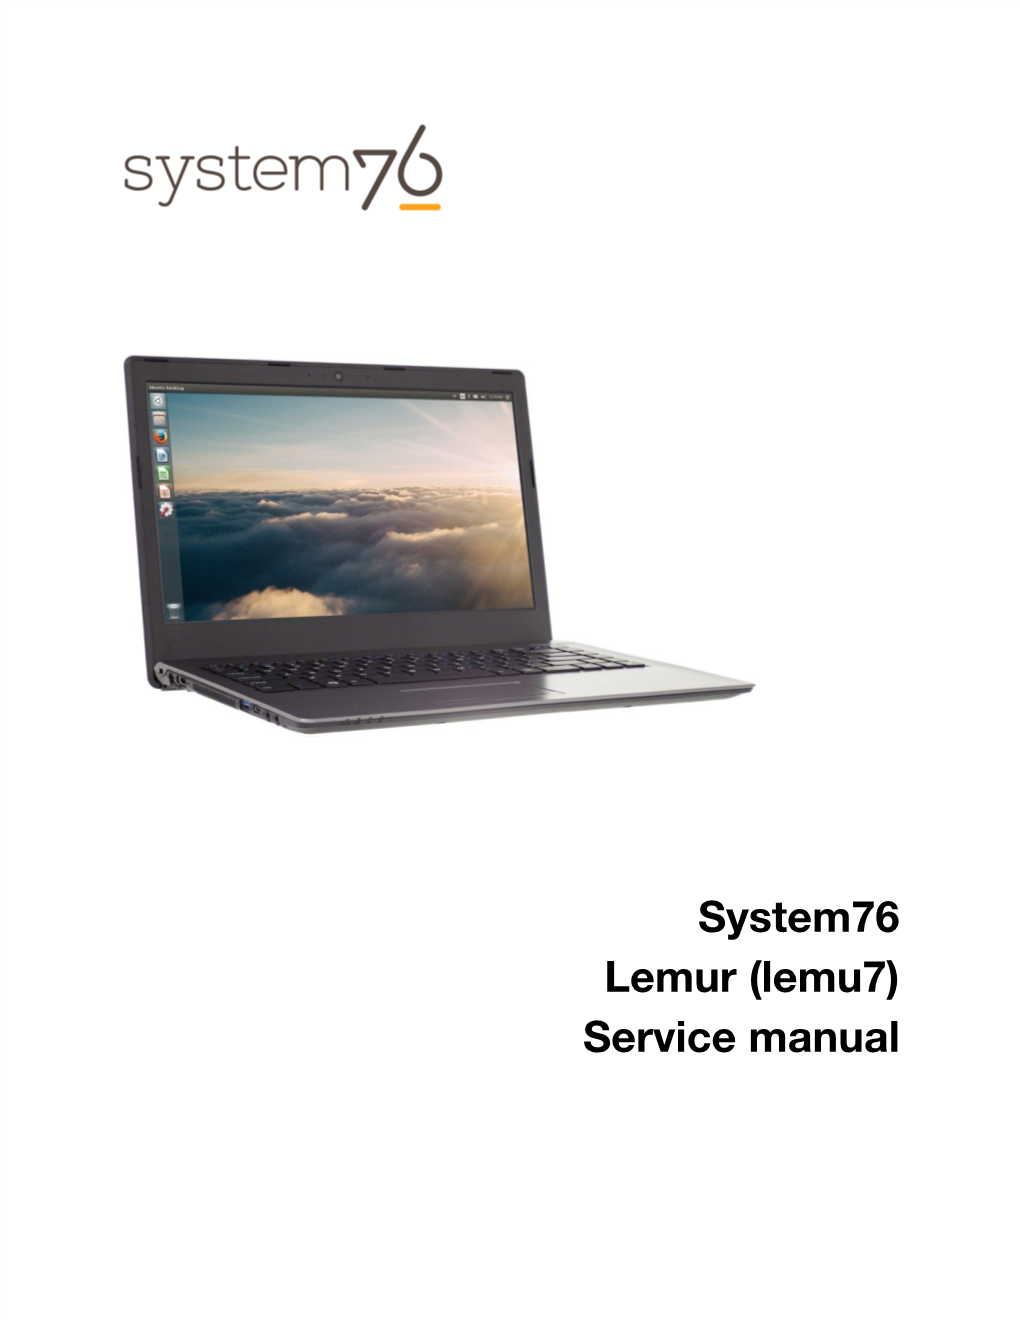 System76 Lemur (Lemu7) Service Manual